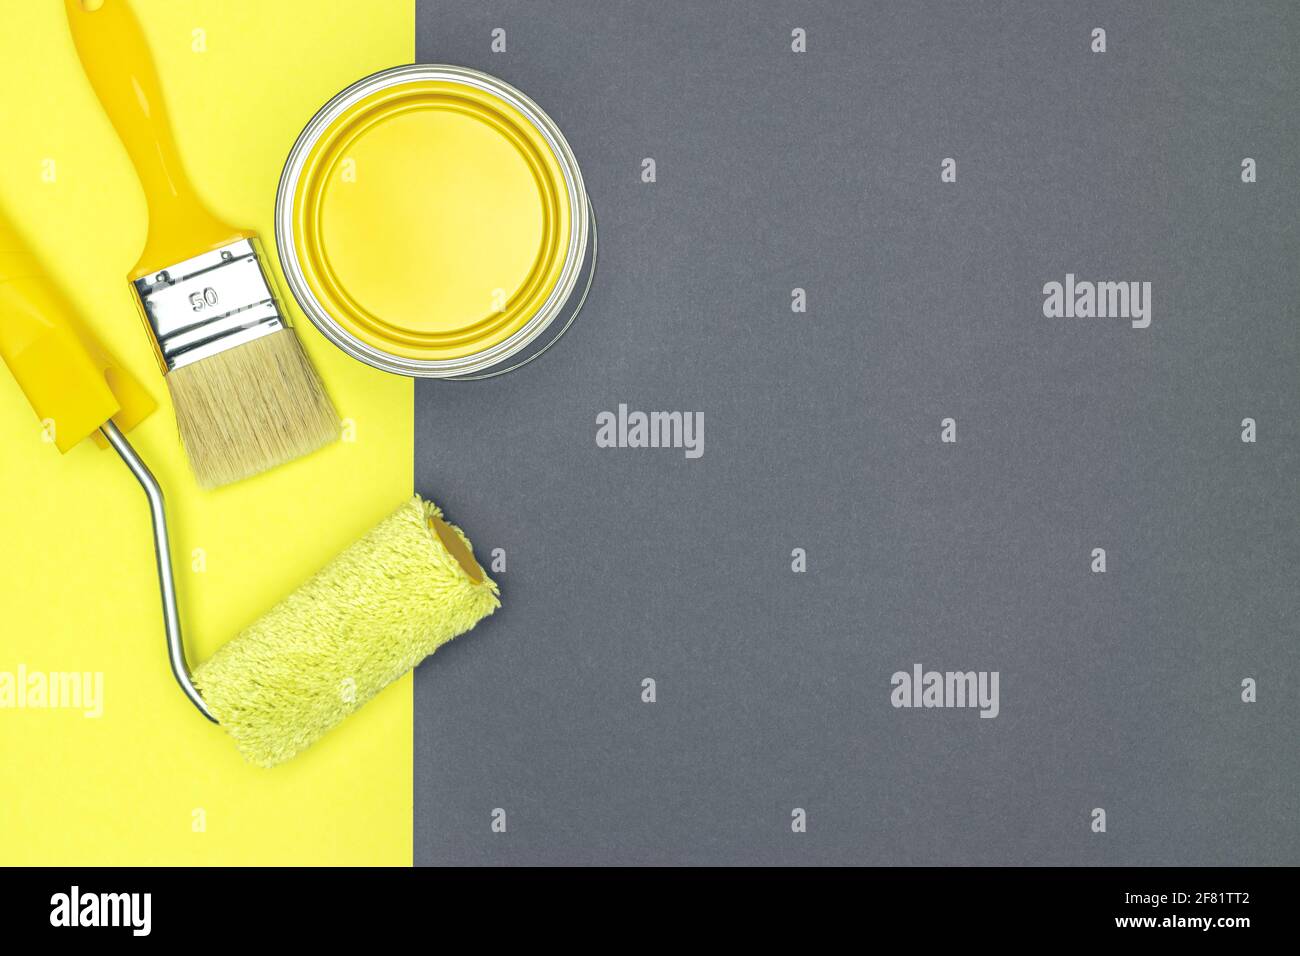 Malwerkzeuge für Hausrenovierung - Pinsel, Farbrolle und Dose mit gelber Farbe. Draufsicht. Stockfoto